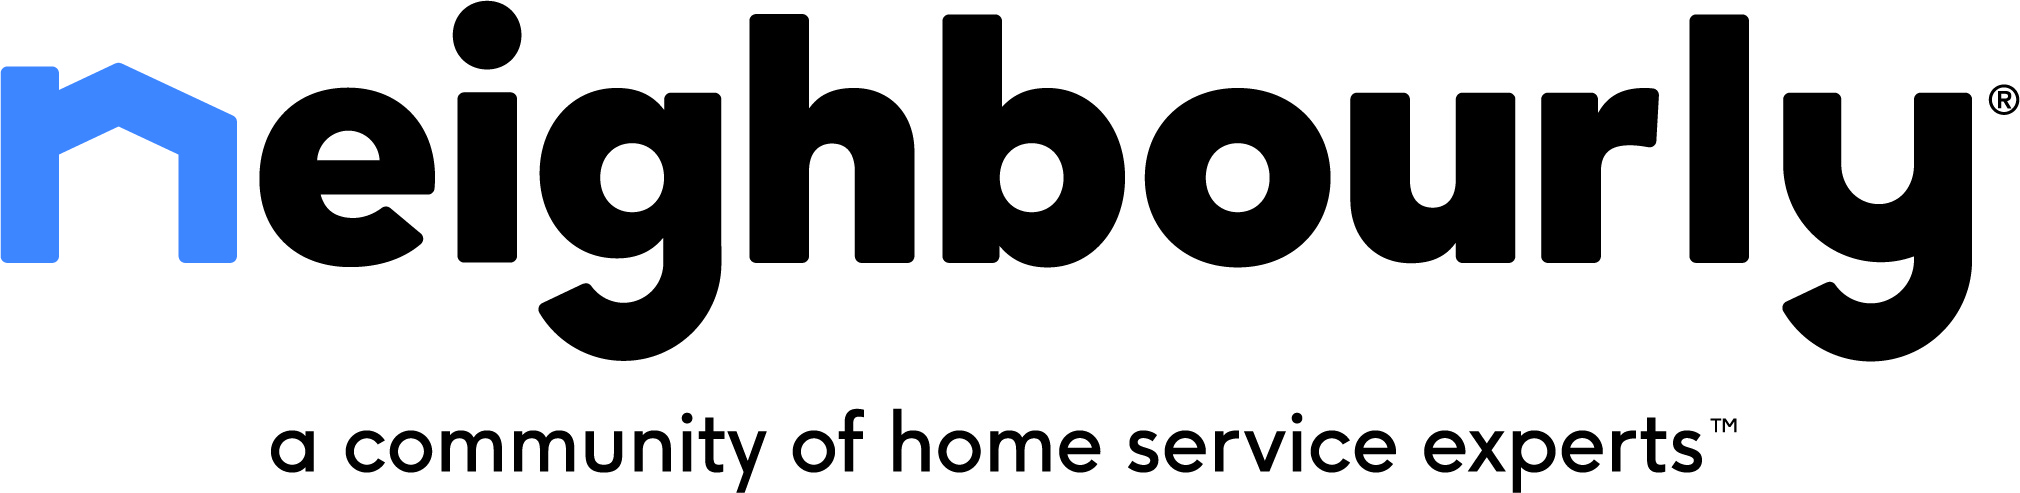 Neighbourly Franchise Logo 